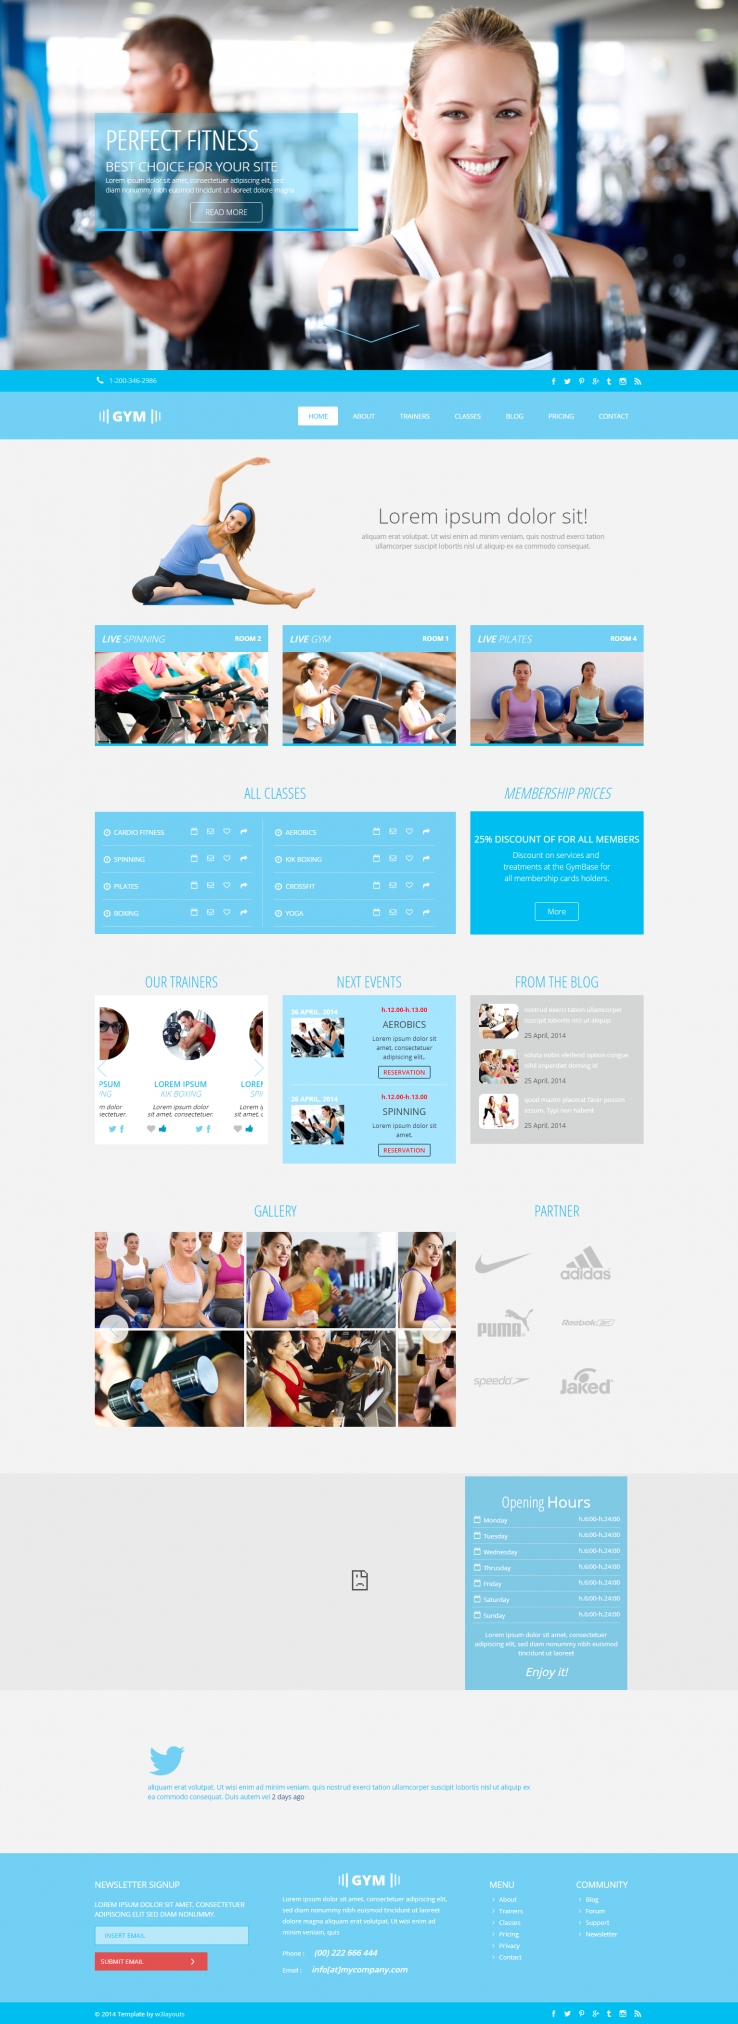 蓝色简洁风格的健身房整站网站源码下载